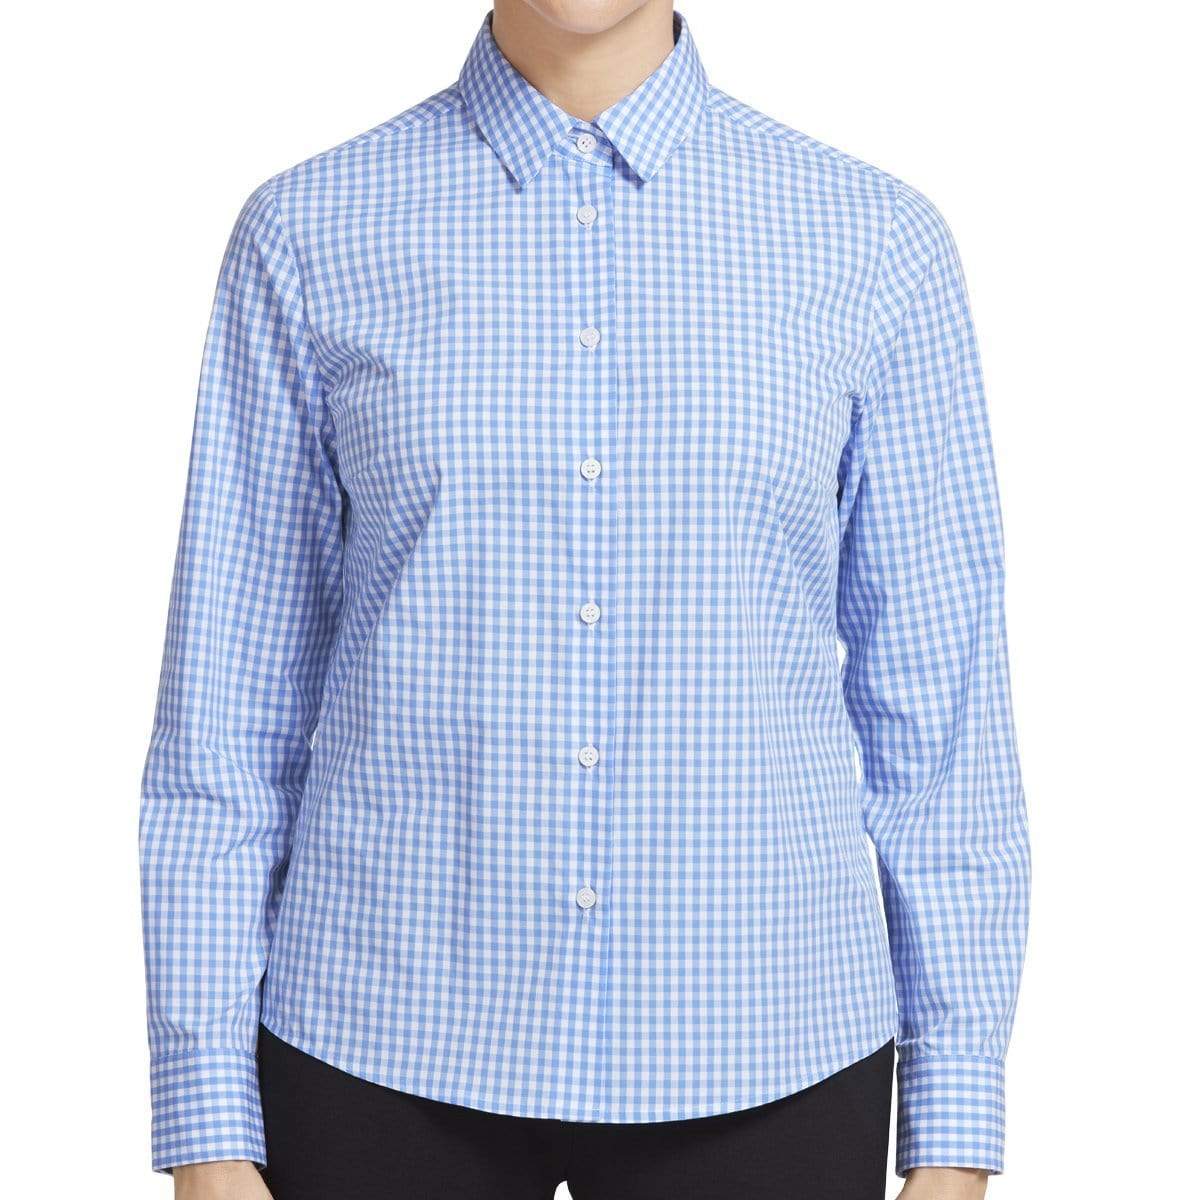 NNT Long Sleeve Shirt CATU94 Corporate Wear NNT Light Blue/White 6 